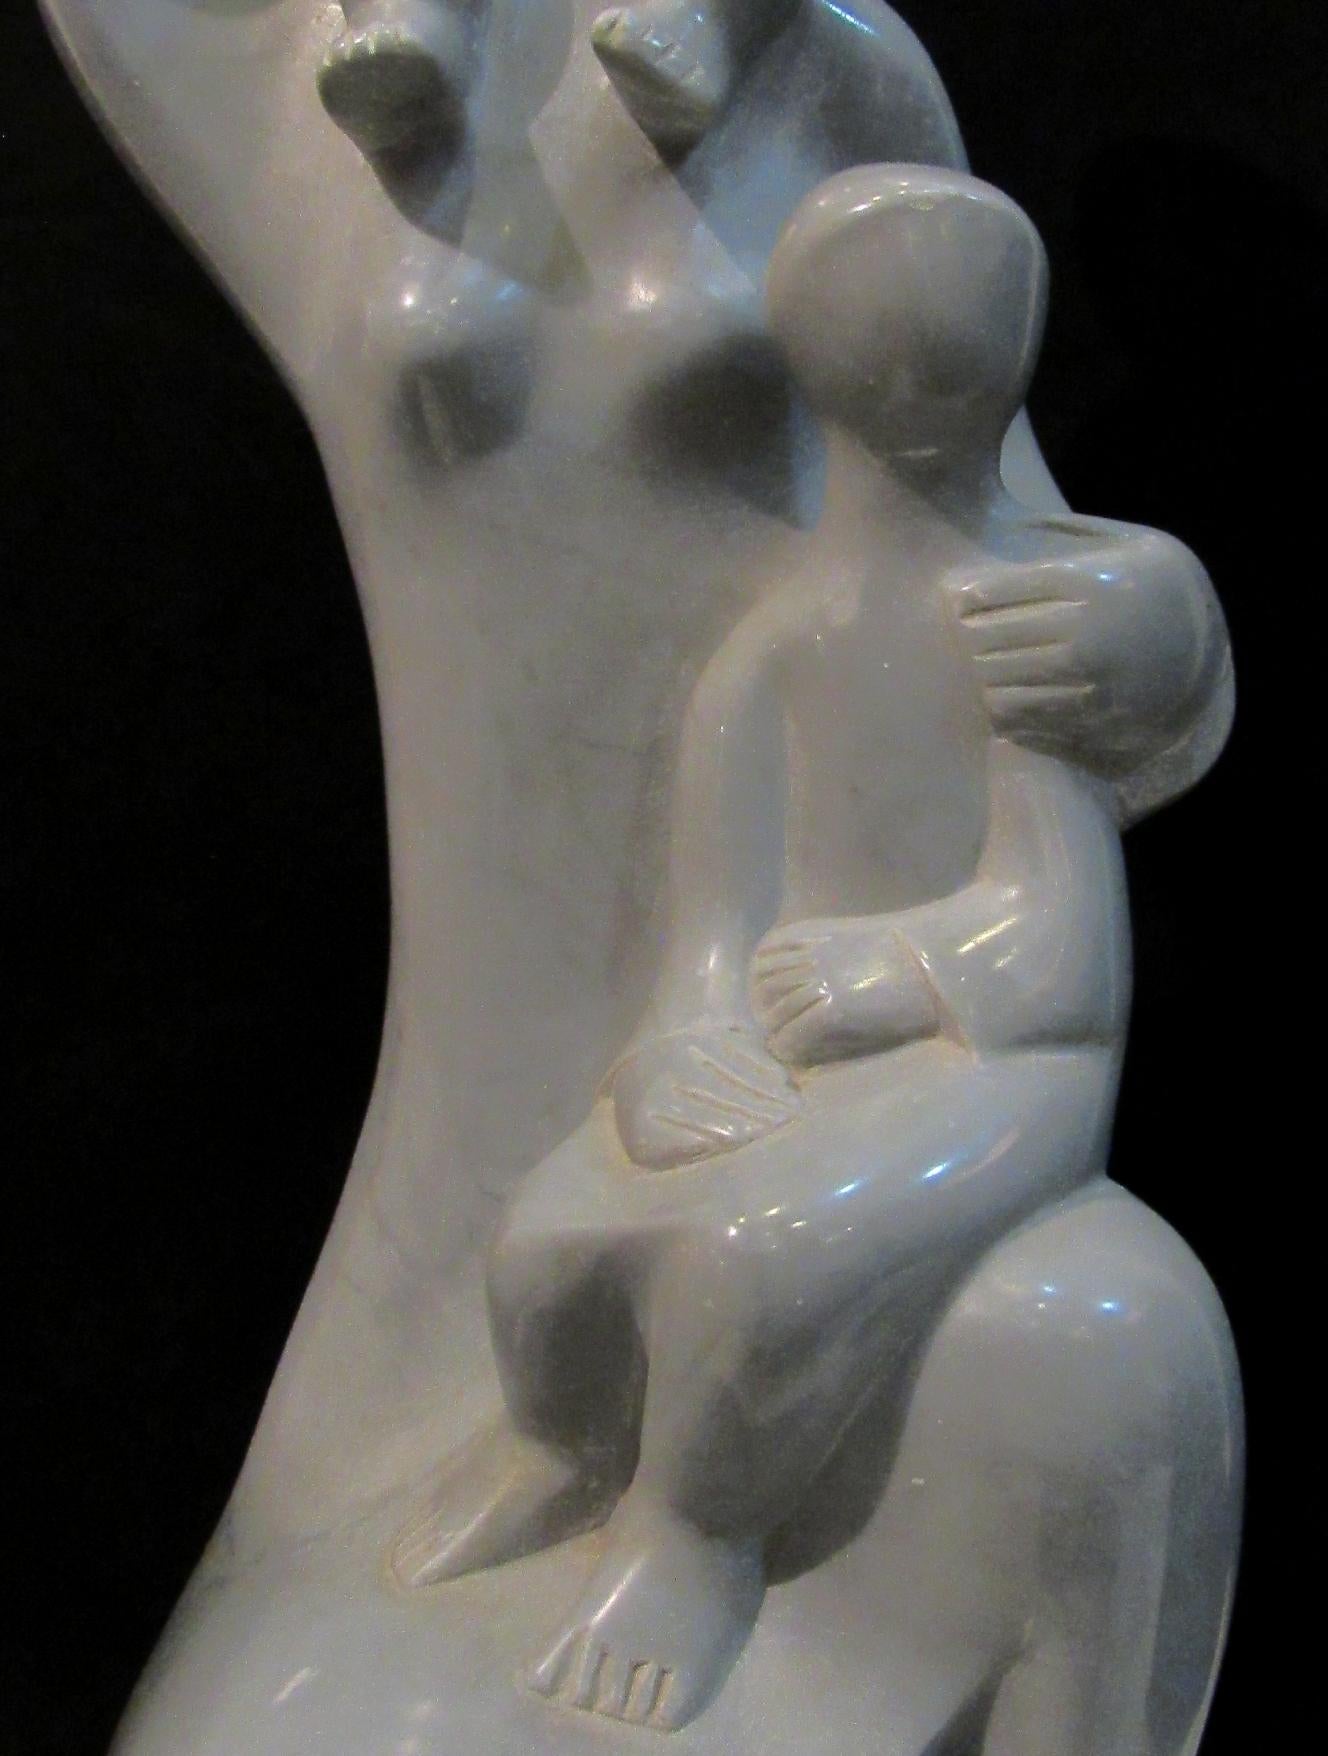 Dani Daniel Kafri Figurative Sculpture - Daniel Kafri, "Family", 1989, grey bordilio marble sculpture, 67x24x26 cm